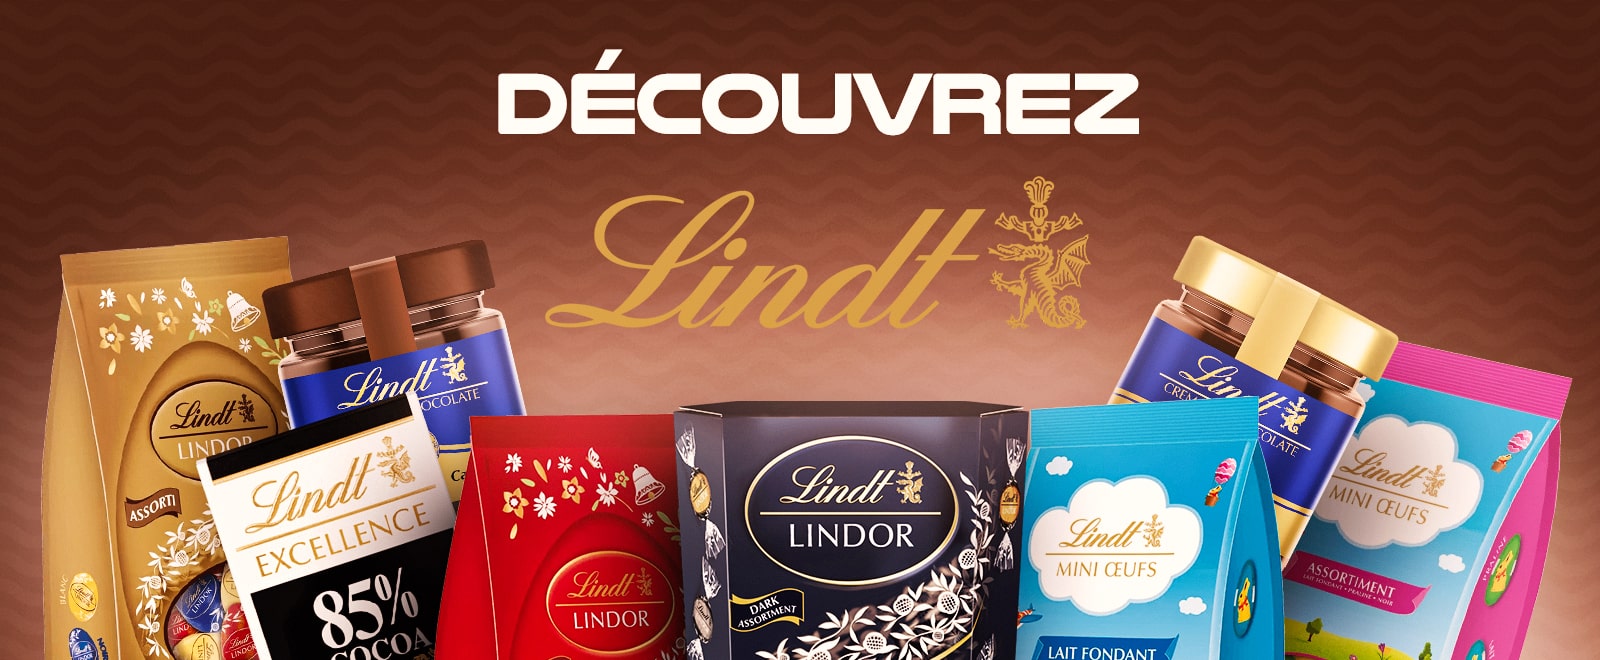 Découvrez Lindt - Une variété de chocolats Lindt comme Lindor, Excellence, et plus encore.